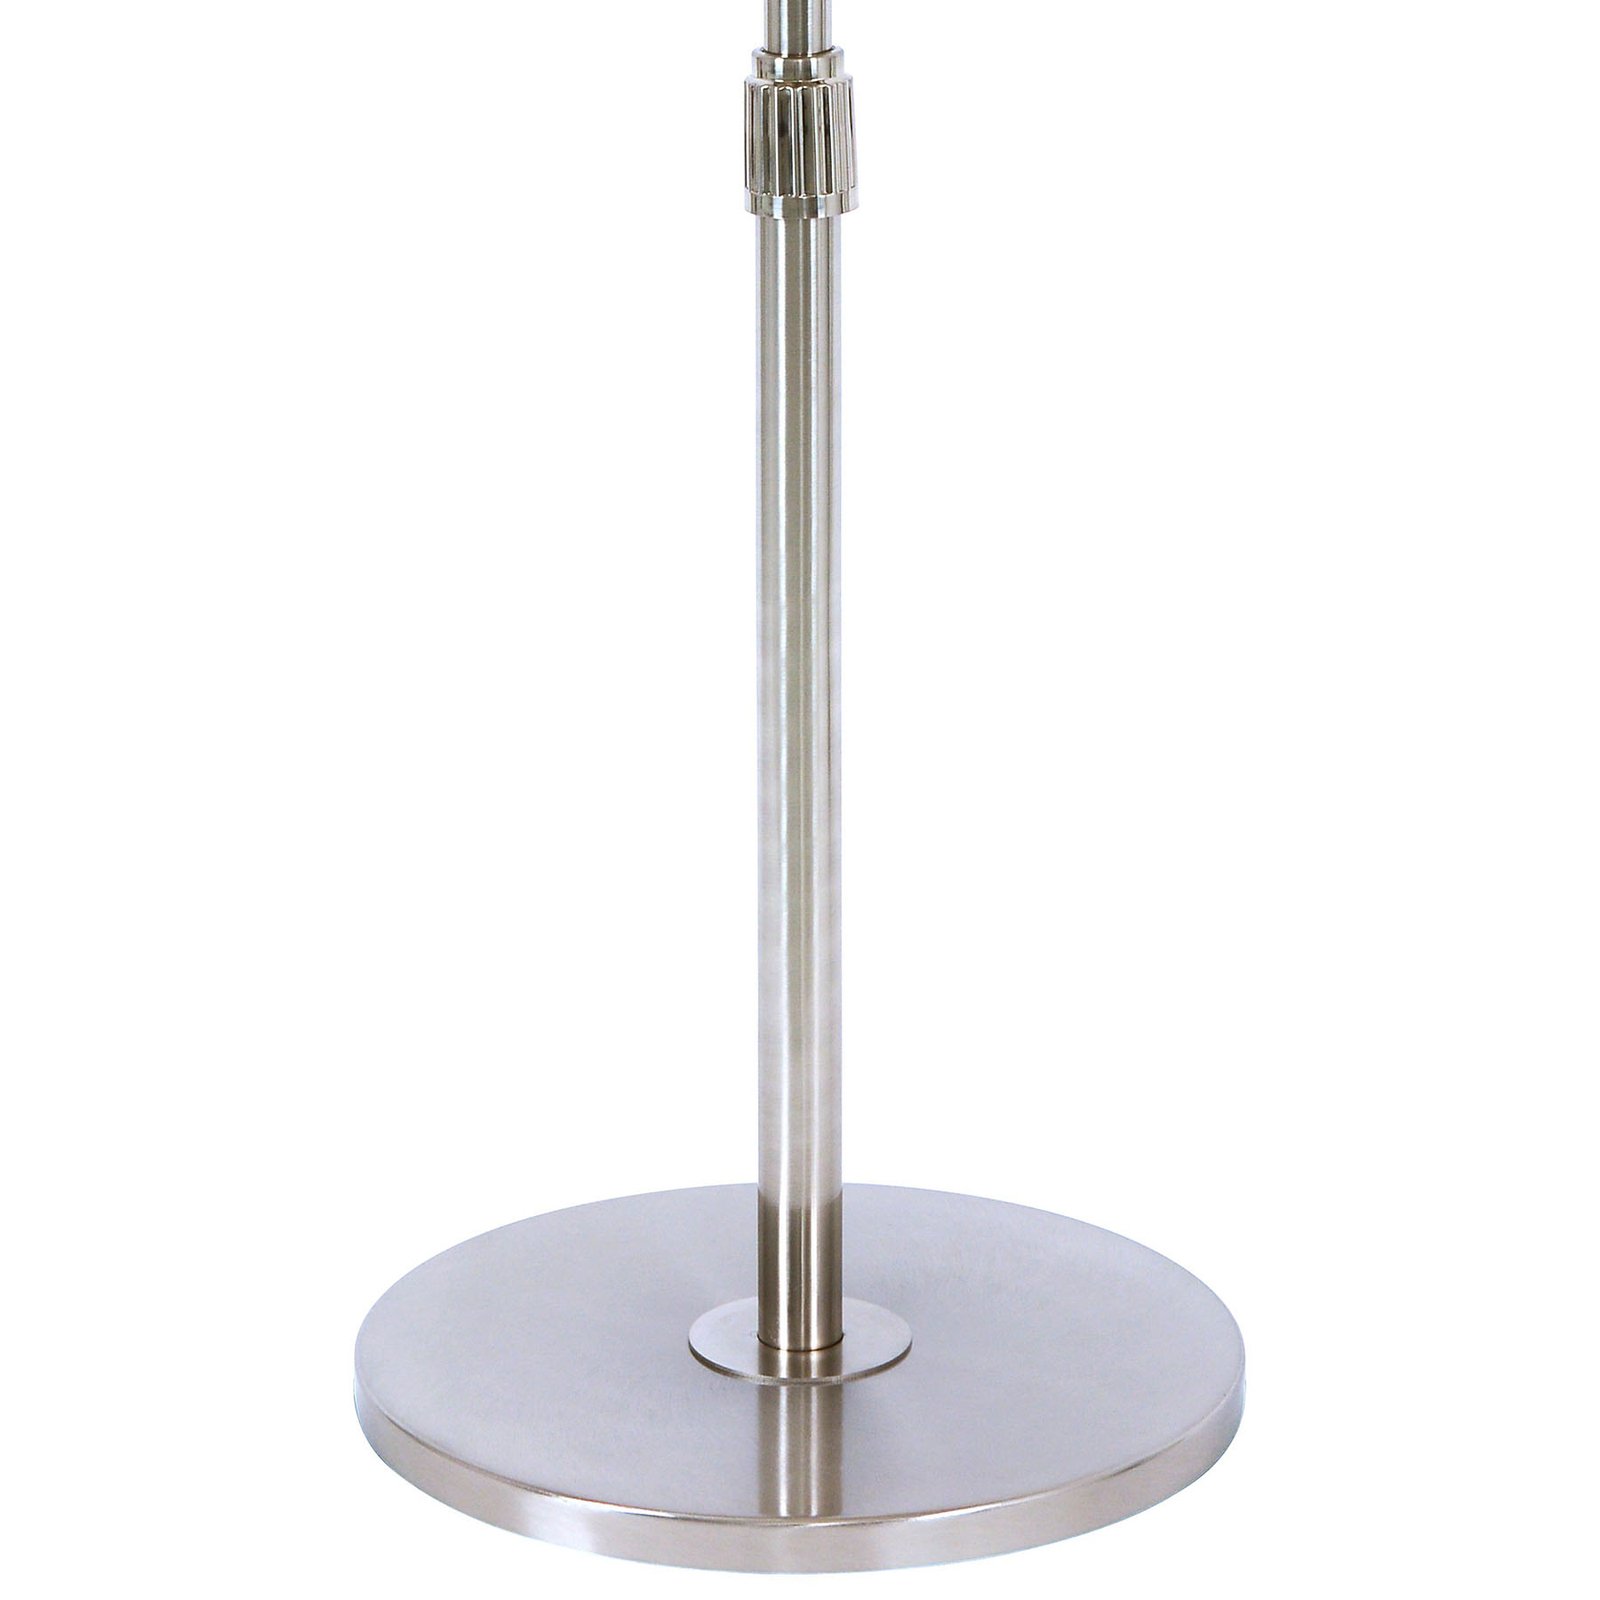 Beacon pedestal fan Breeze chrome-coloured, round base, quiet